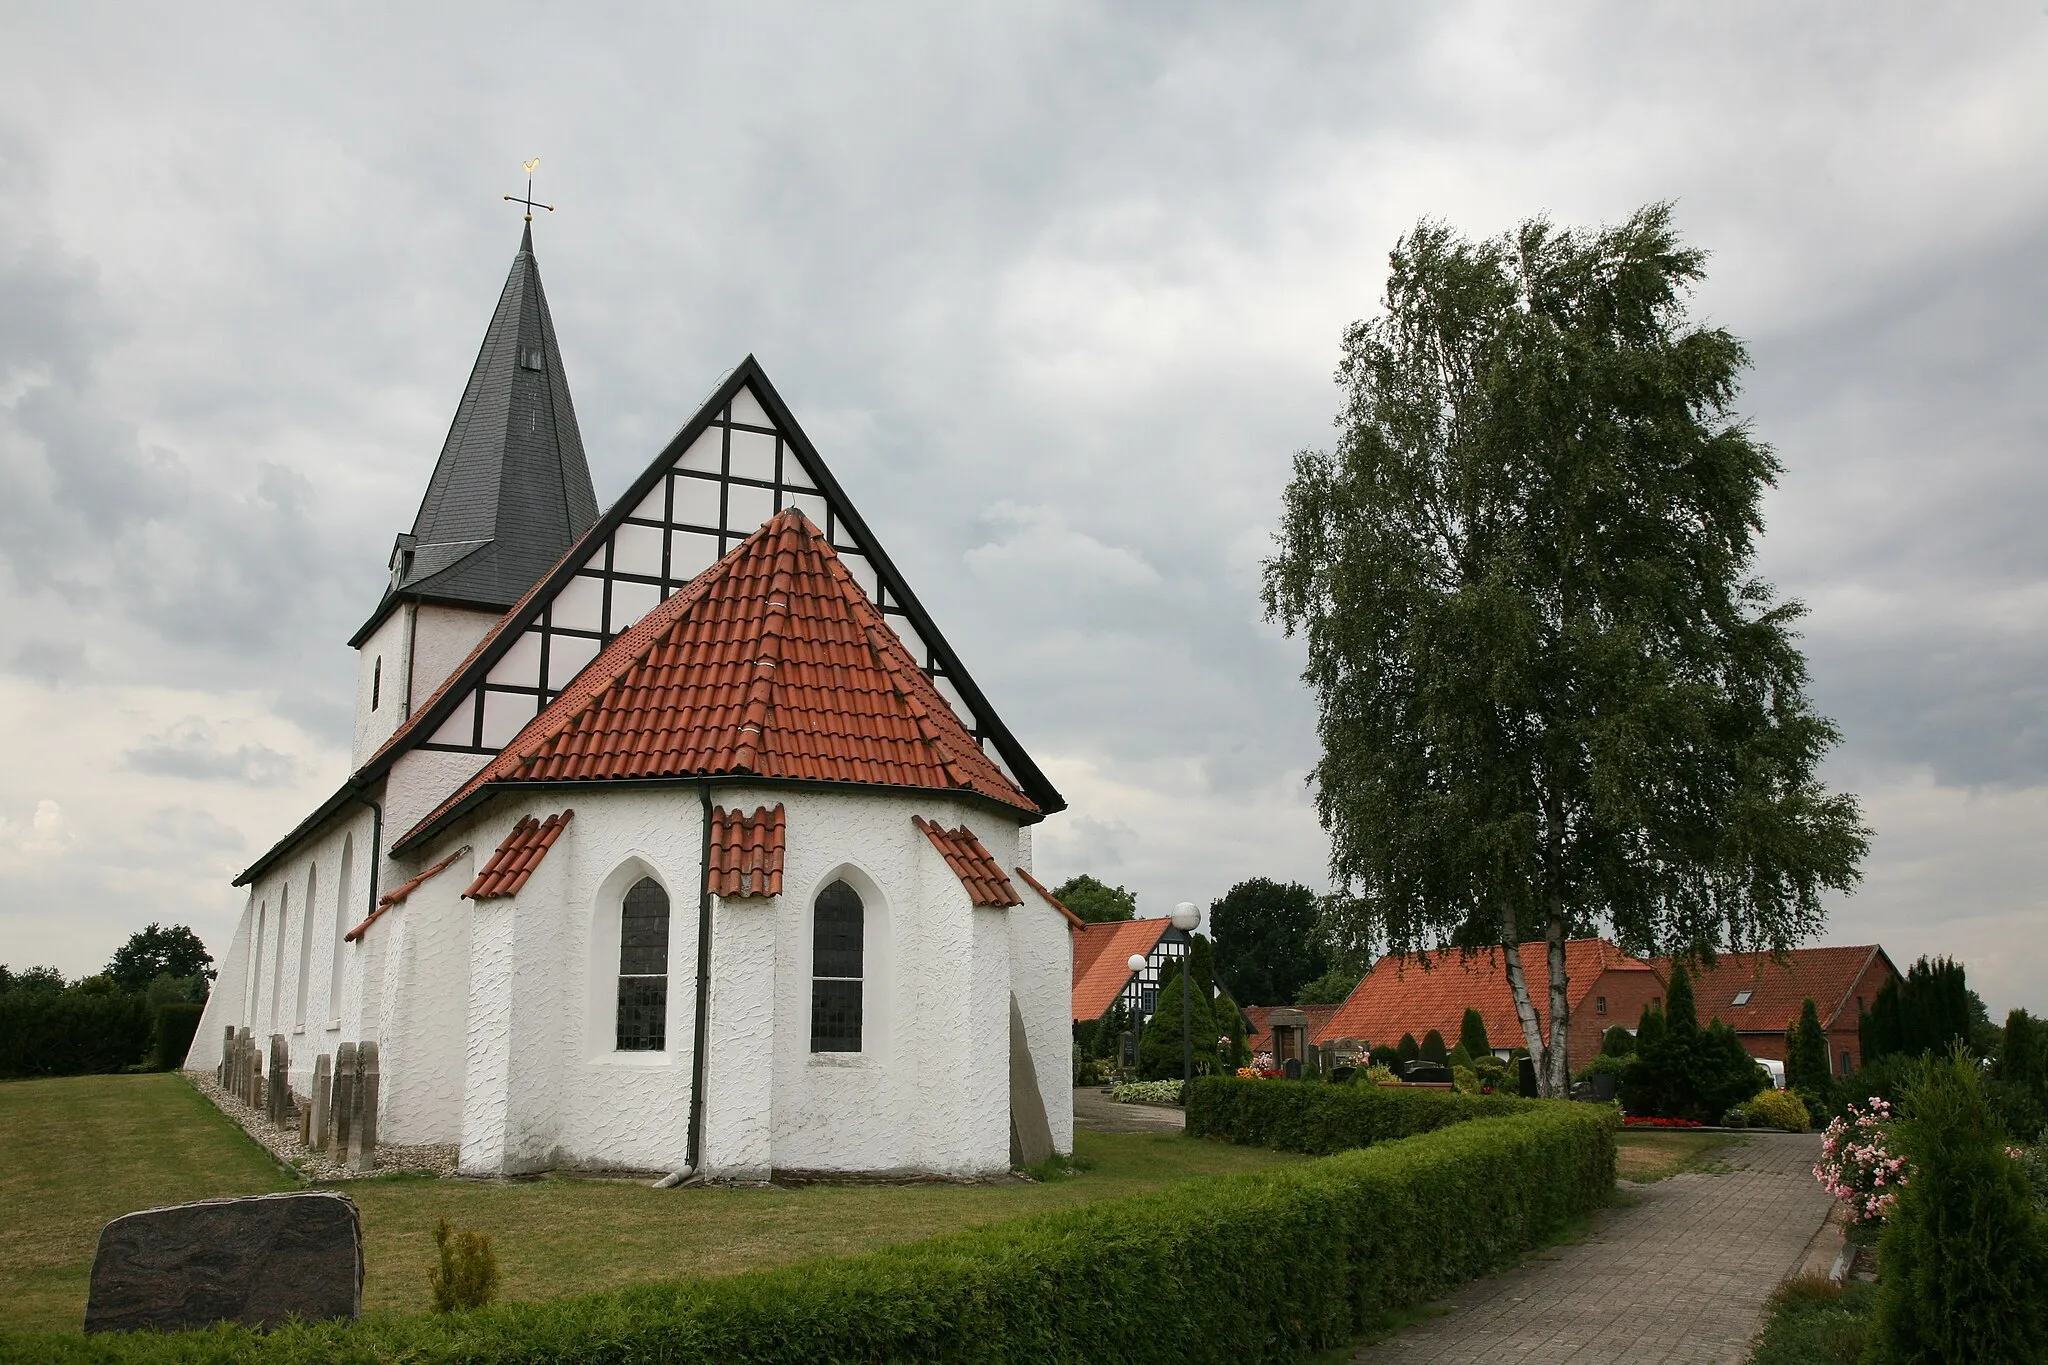 Photo showing: The church St. Marien in Burlage, Landkreis Diepholz